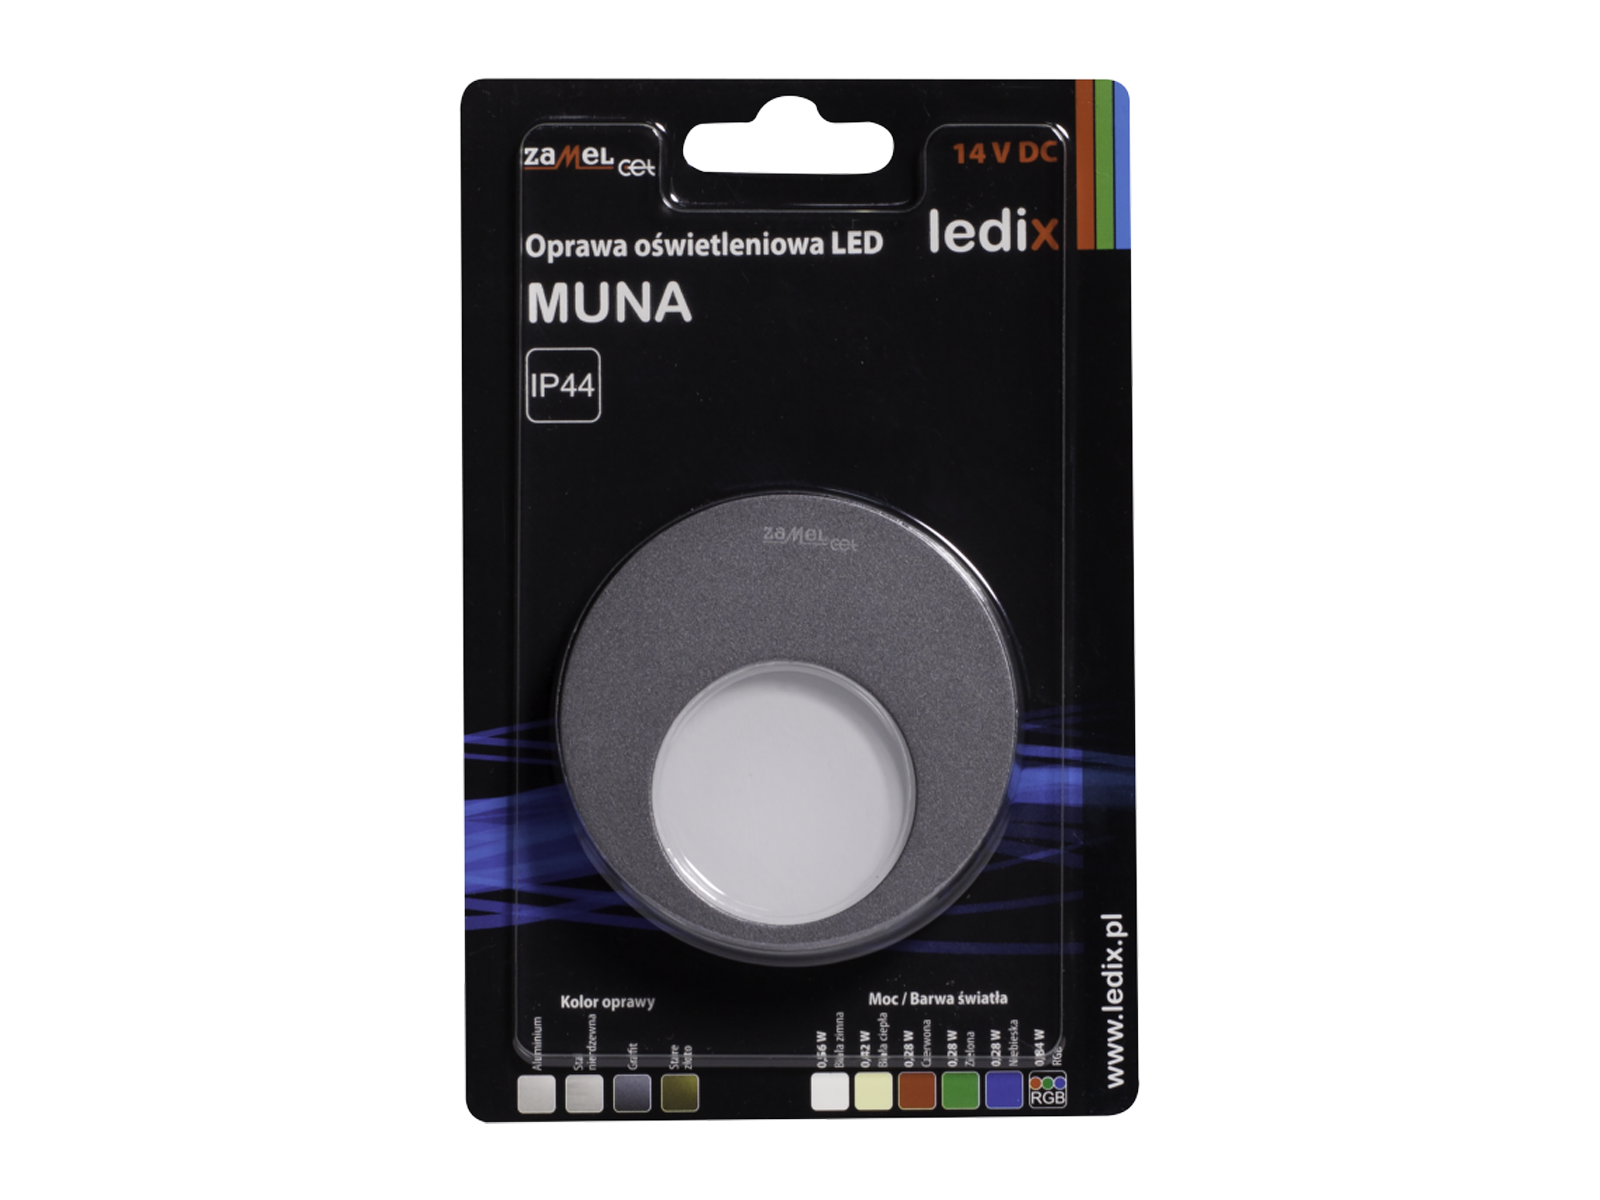 Svítidlo LED na omítku LEDIX MUNA 14V DC, grafit, studená bílá, IP44